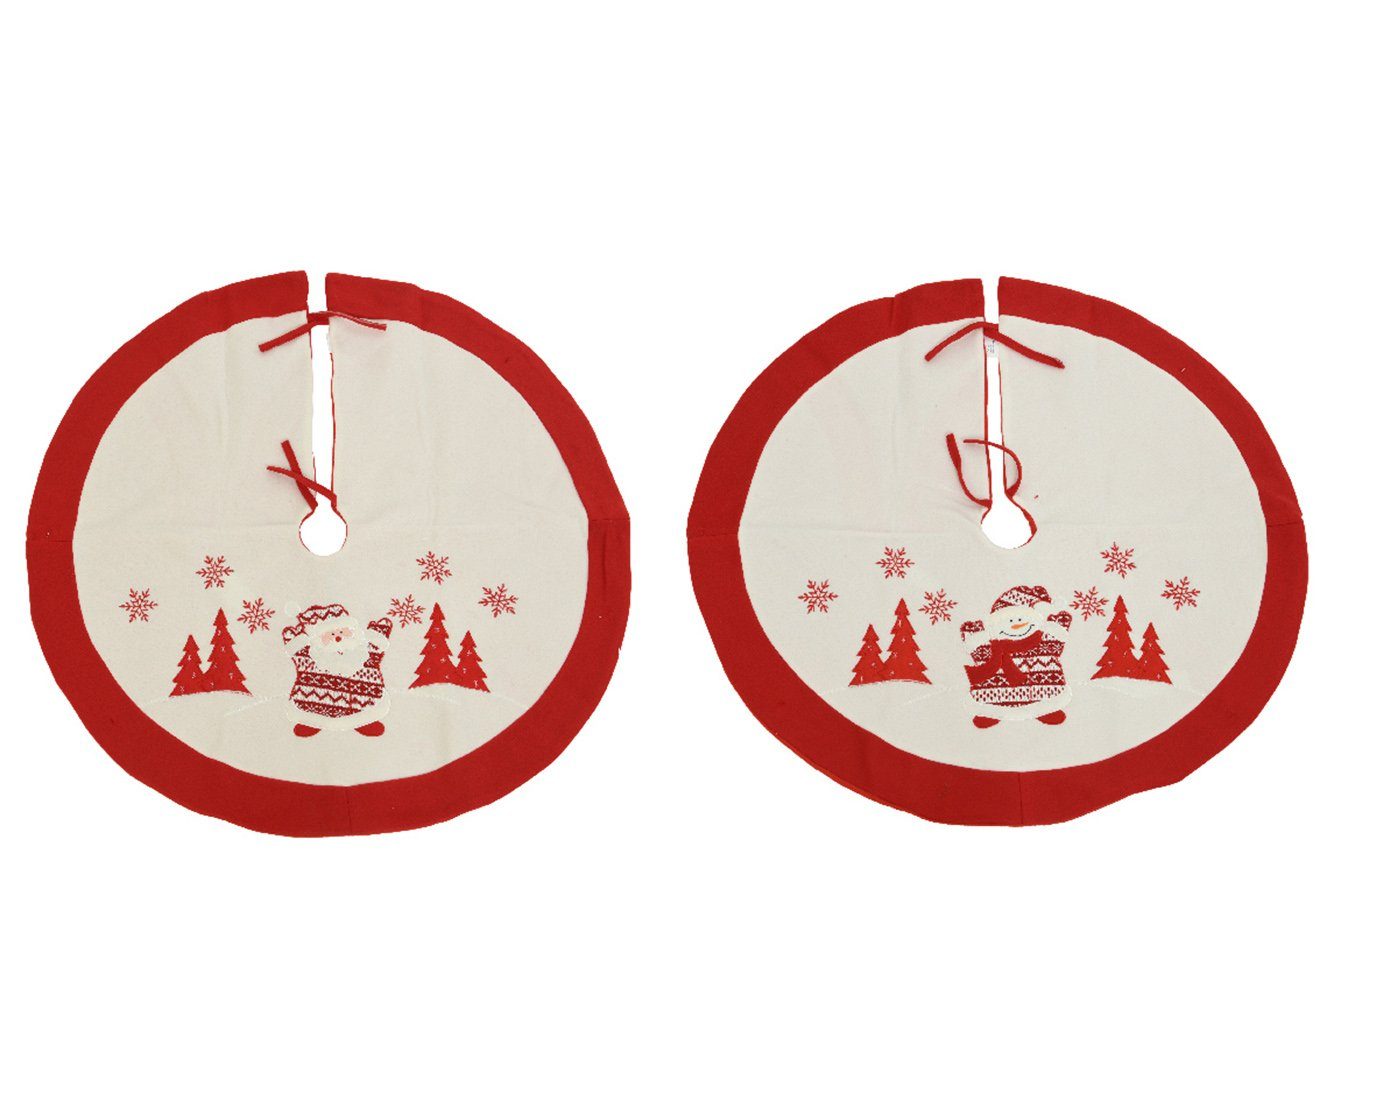 Decoris season decorations Weihnachtsbaumdecke, Weihnachtsbaumdecke 1 rot / mit Santa Filz Stück 90cm sort. Schneemann